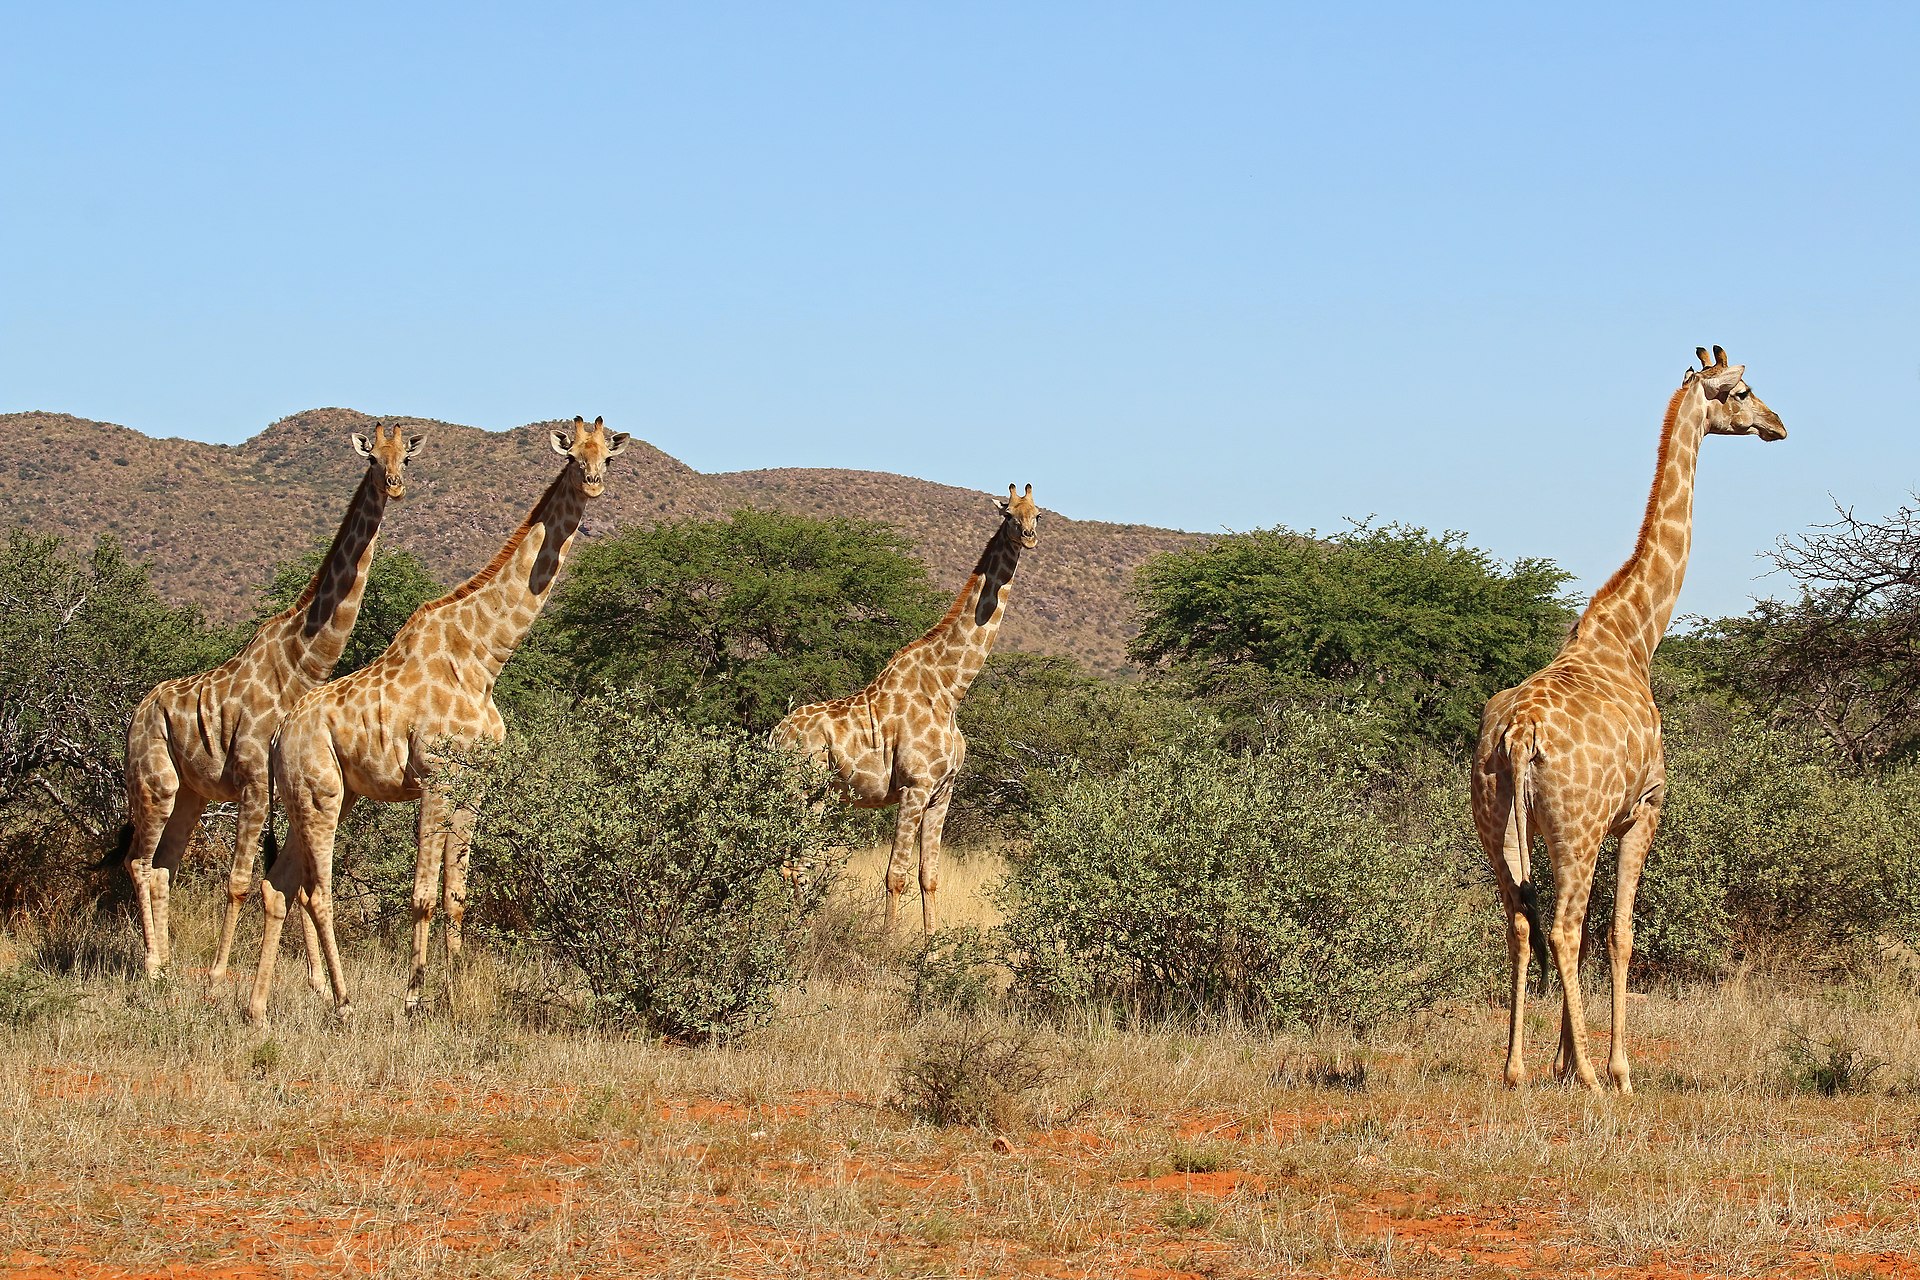 Podle některých odhadů dokážou žirafy na kratší vzdálenost vyvinout rychlost i přes 60 km/h, čímž by se výrazně blížily například i závodním koňům. Zatím však nebyl doložen případ, kdy by dospělý jedinec žirafy běžel prokazatelně rychlostí přes 40 km